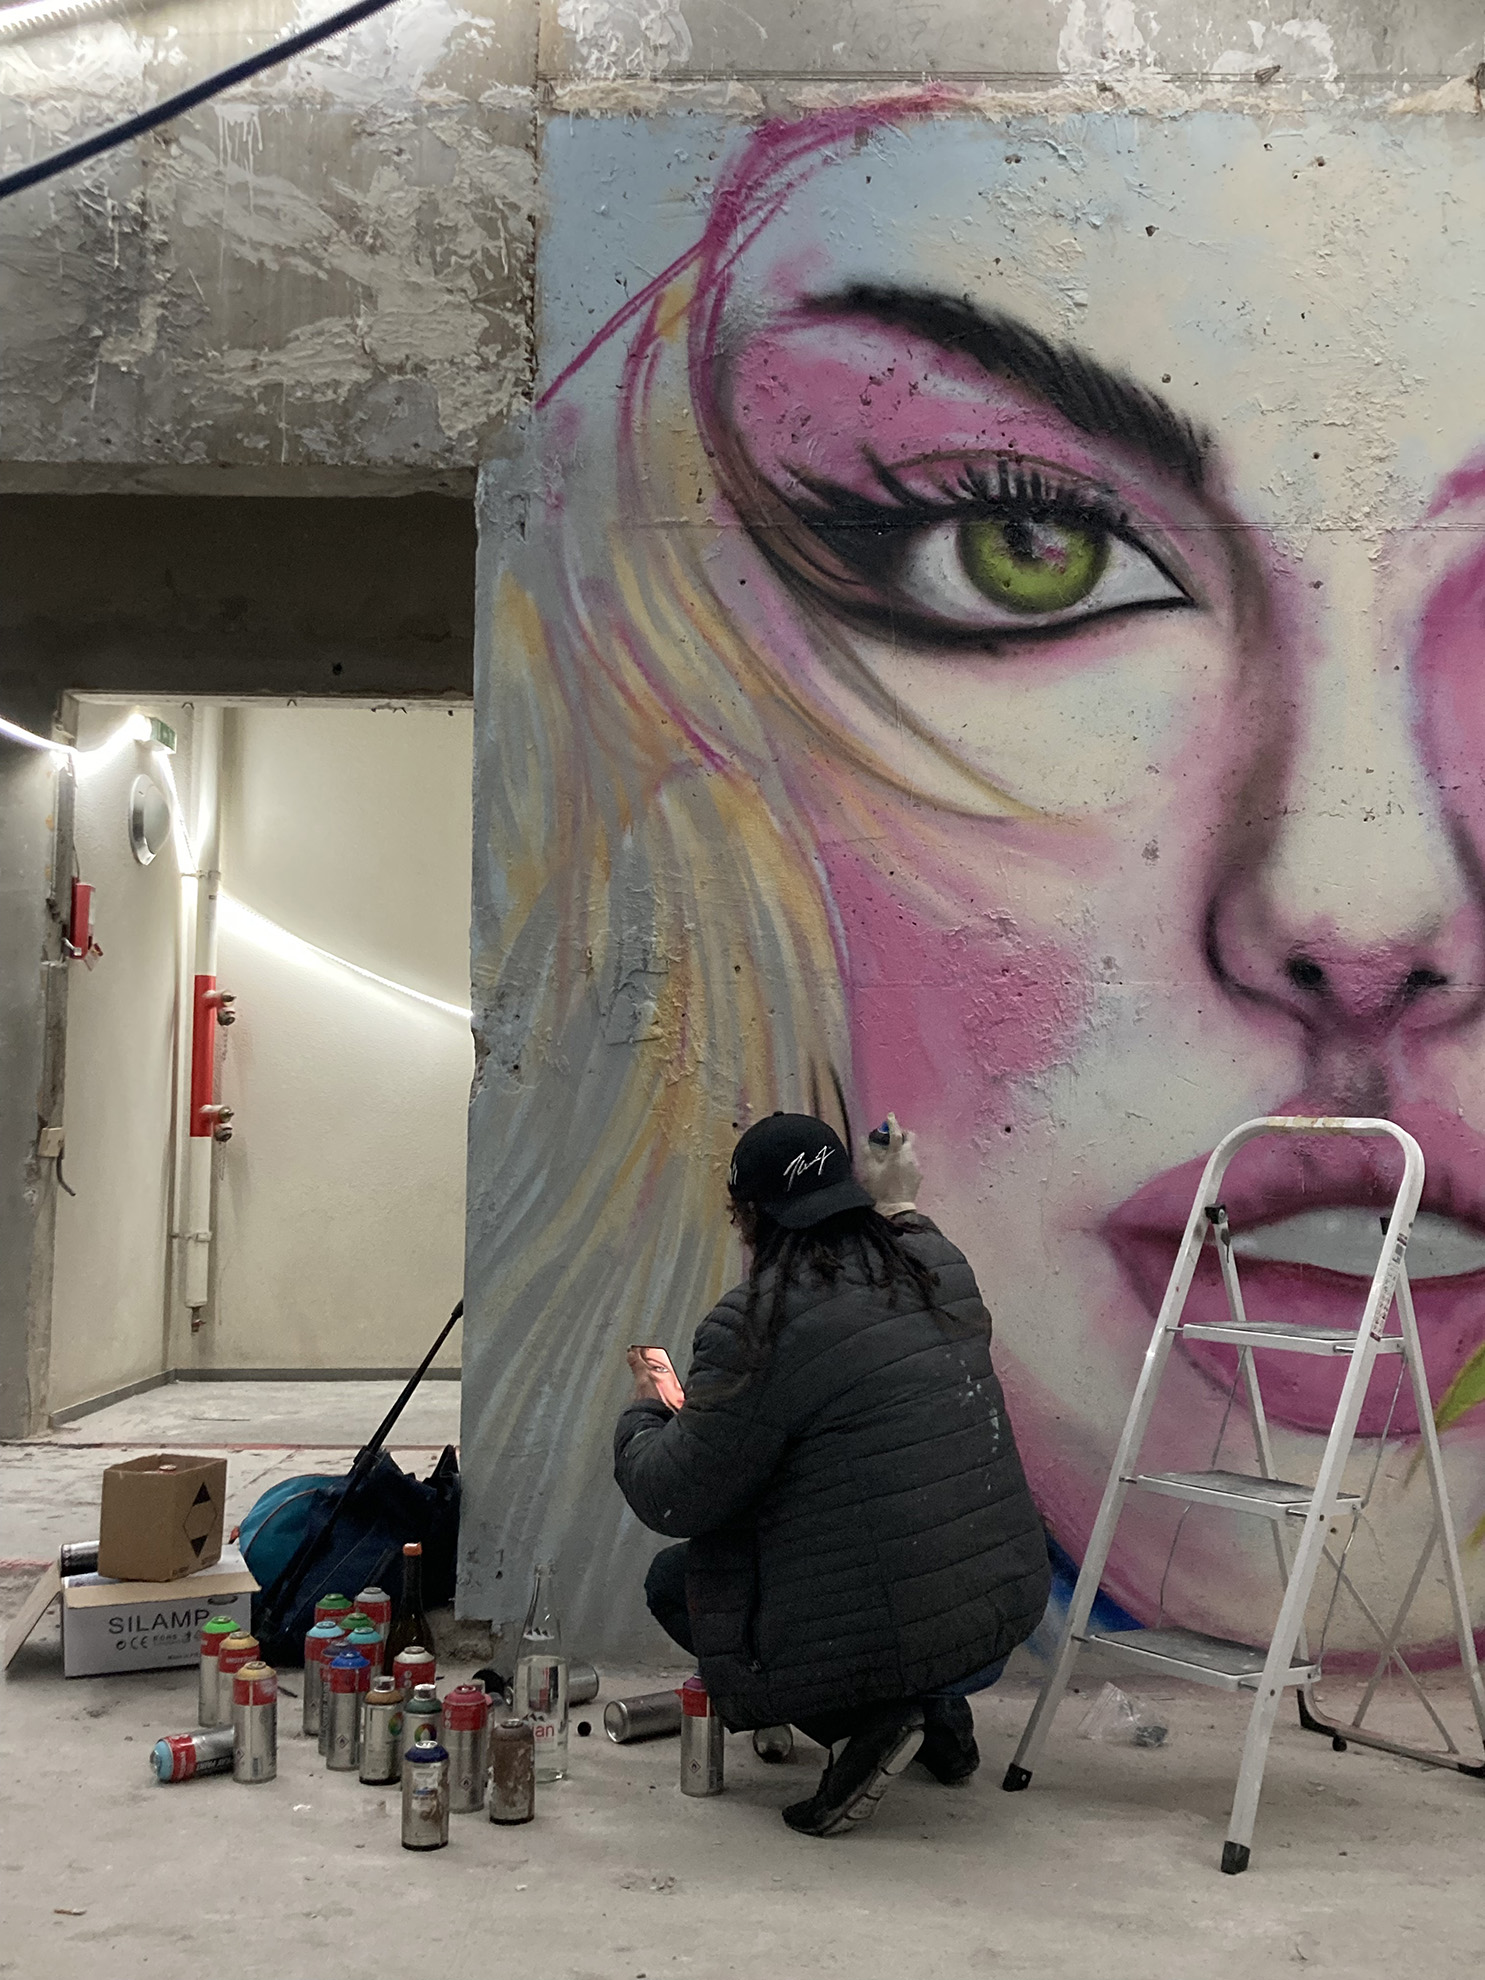 Une personne fait un graffiti du visage d'une femme sur le mur intérieur d'un immeuble en chantier